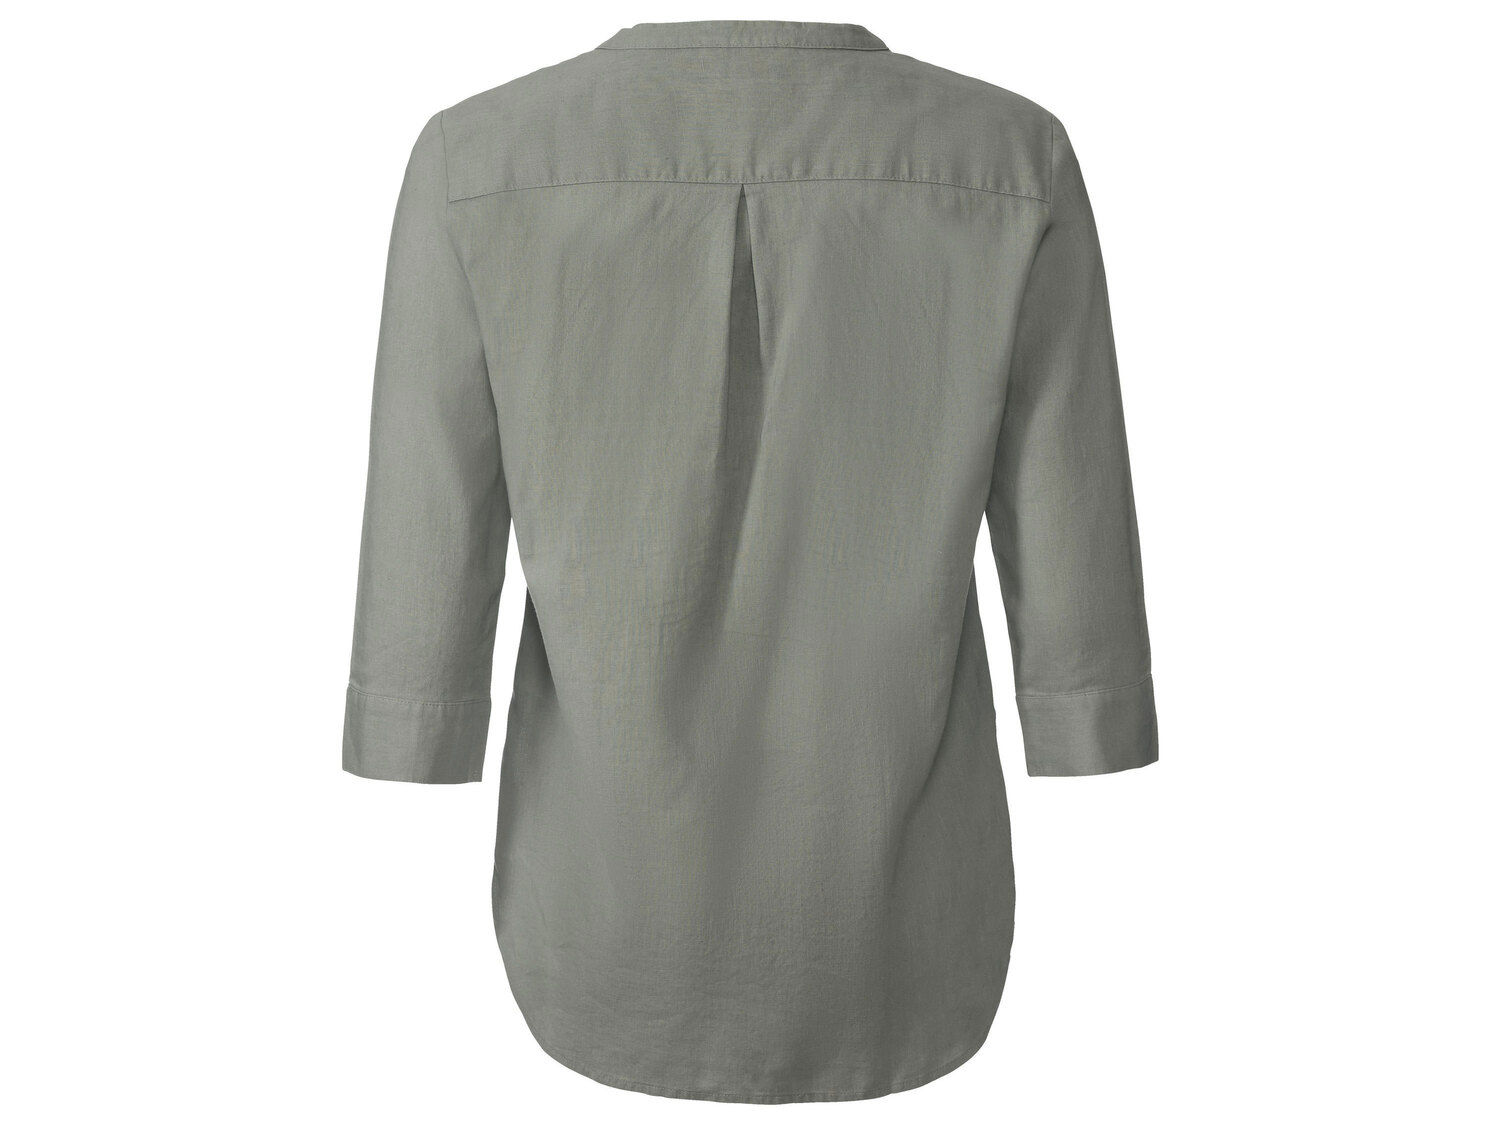 Bluzka damska z lnem Esmara, cena 39,99 PLN 
- 55% lnu, 45% bawełny
- rozmiary: ...